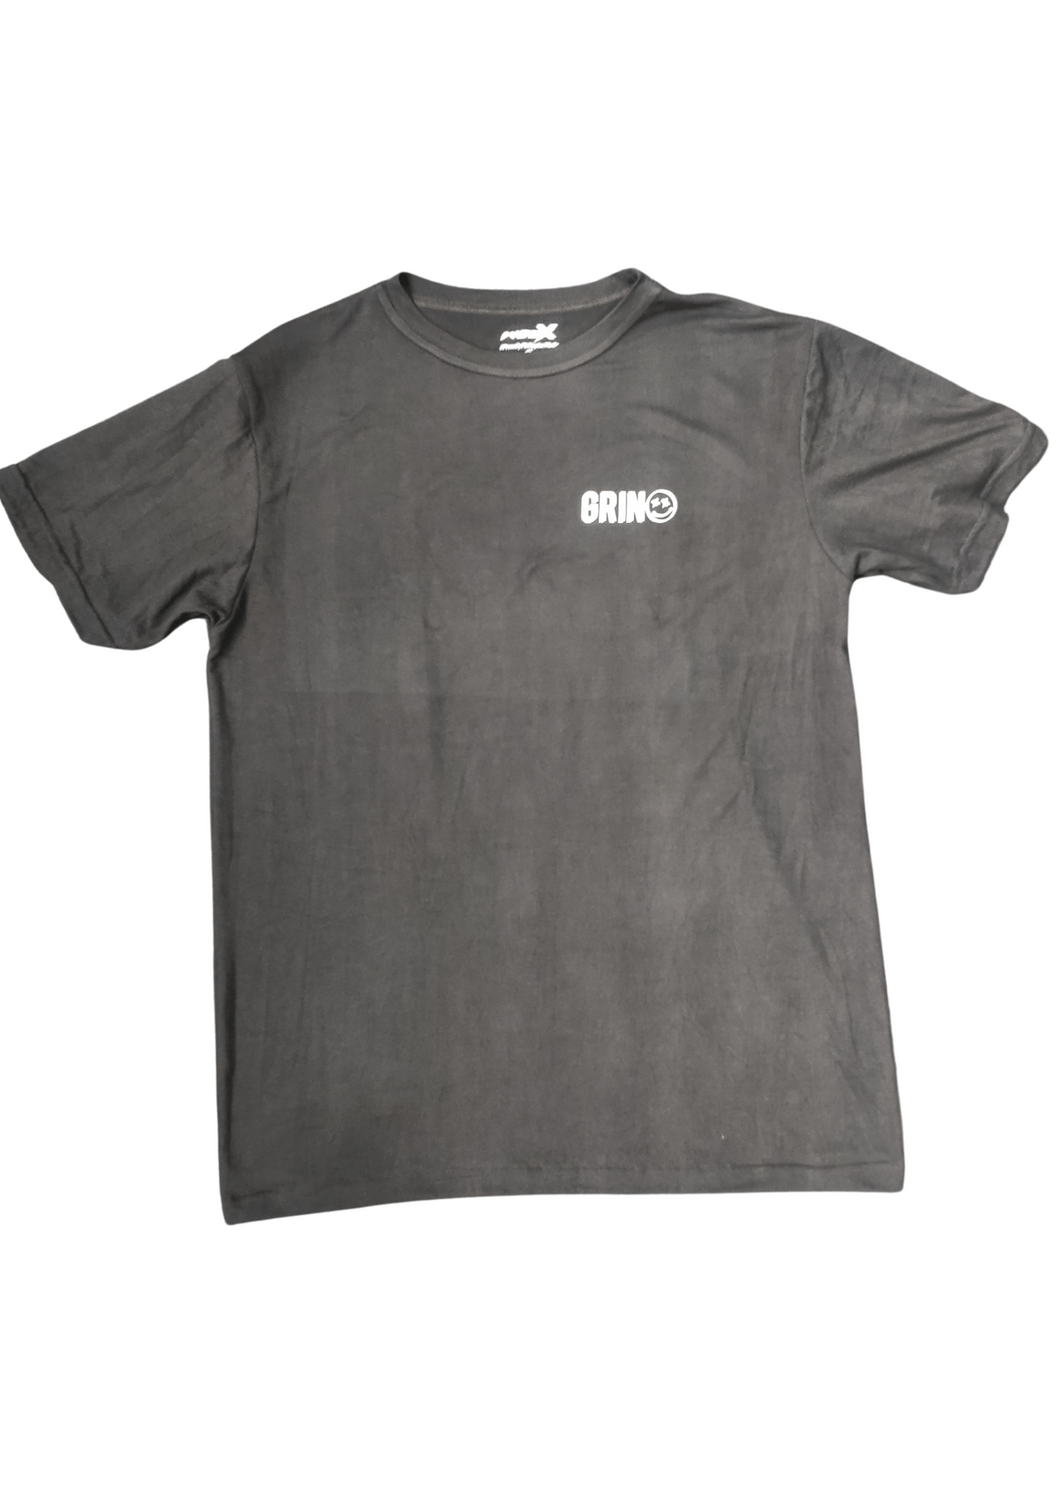 The GRIN x WODX T-Shirt